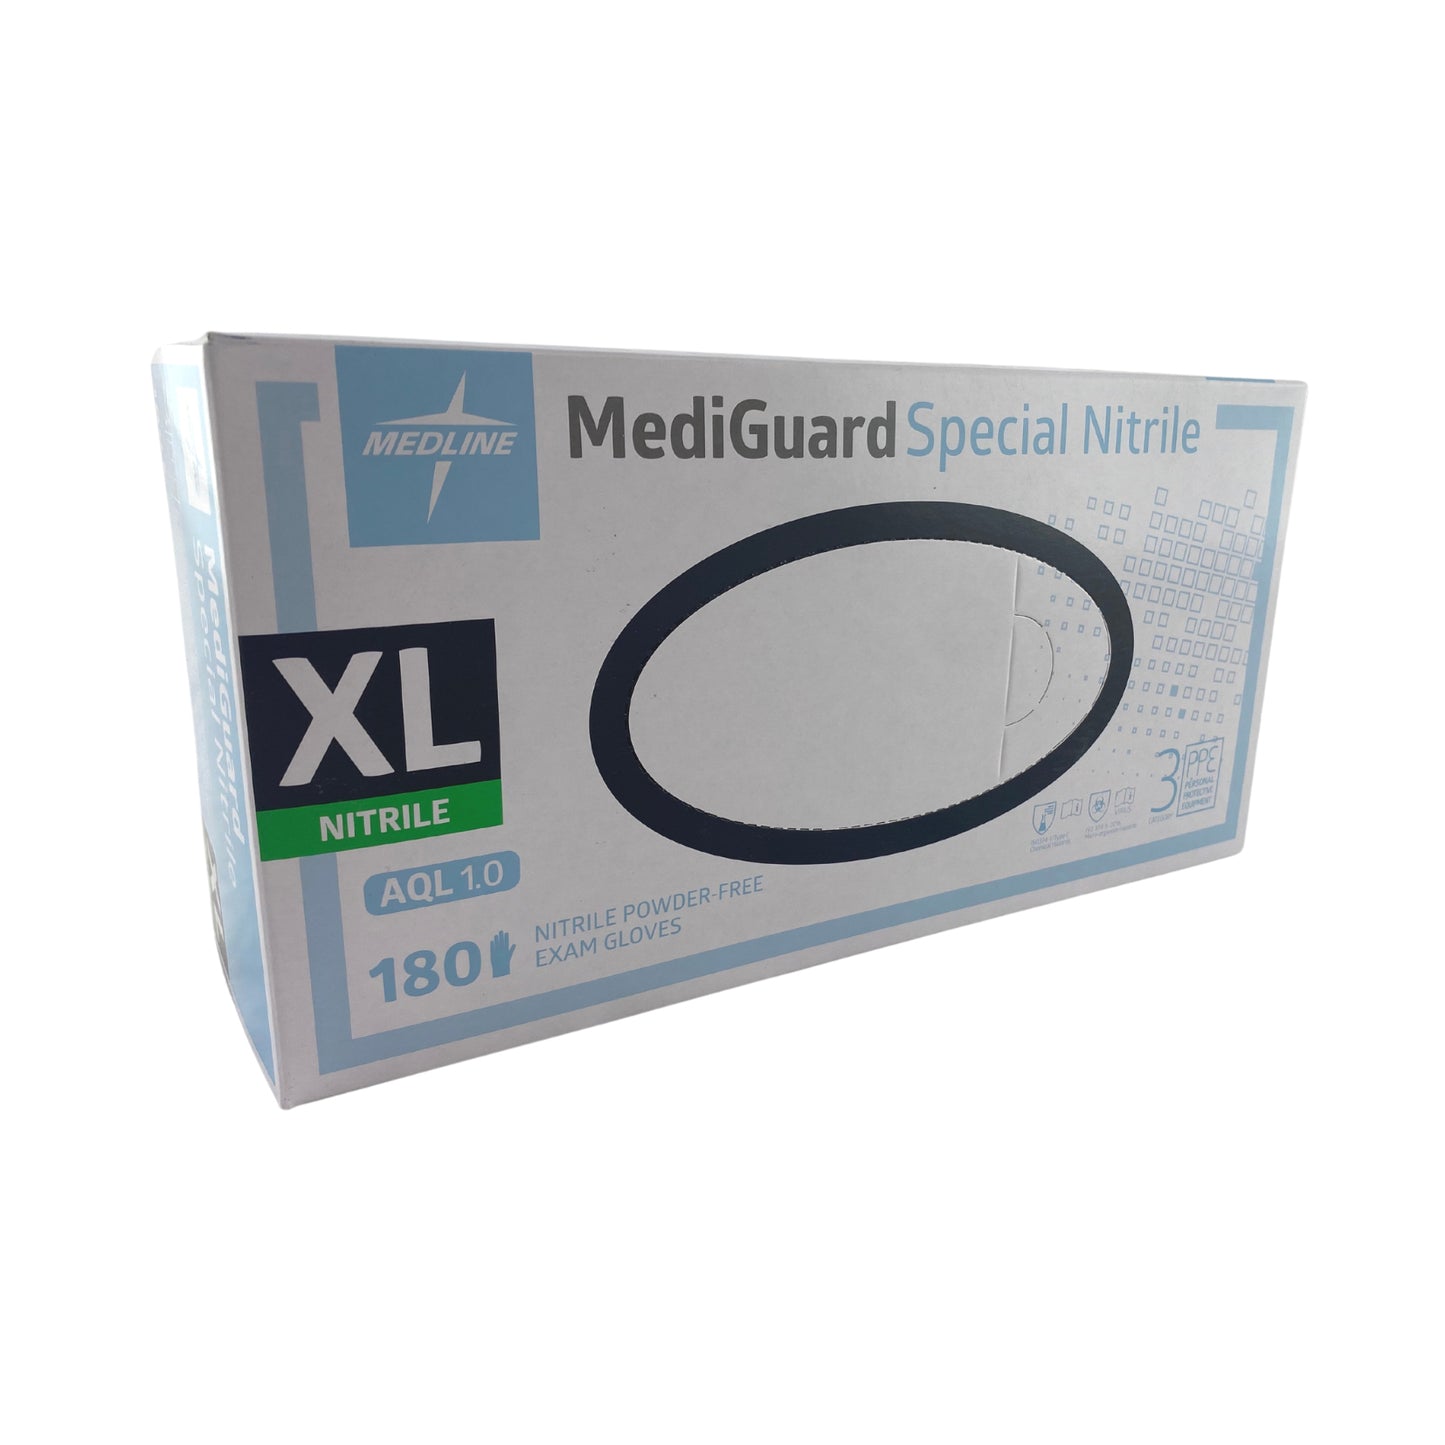 Mediguard Nitrile Gloves Box